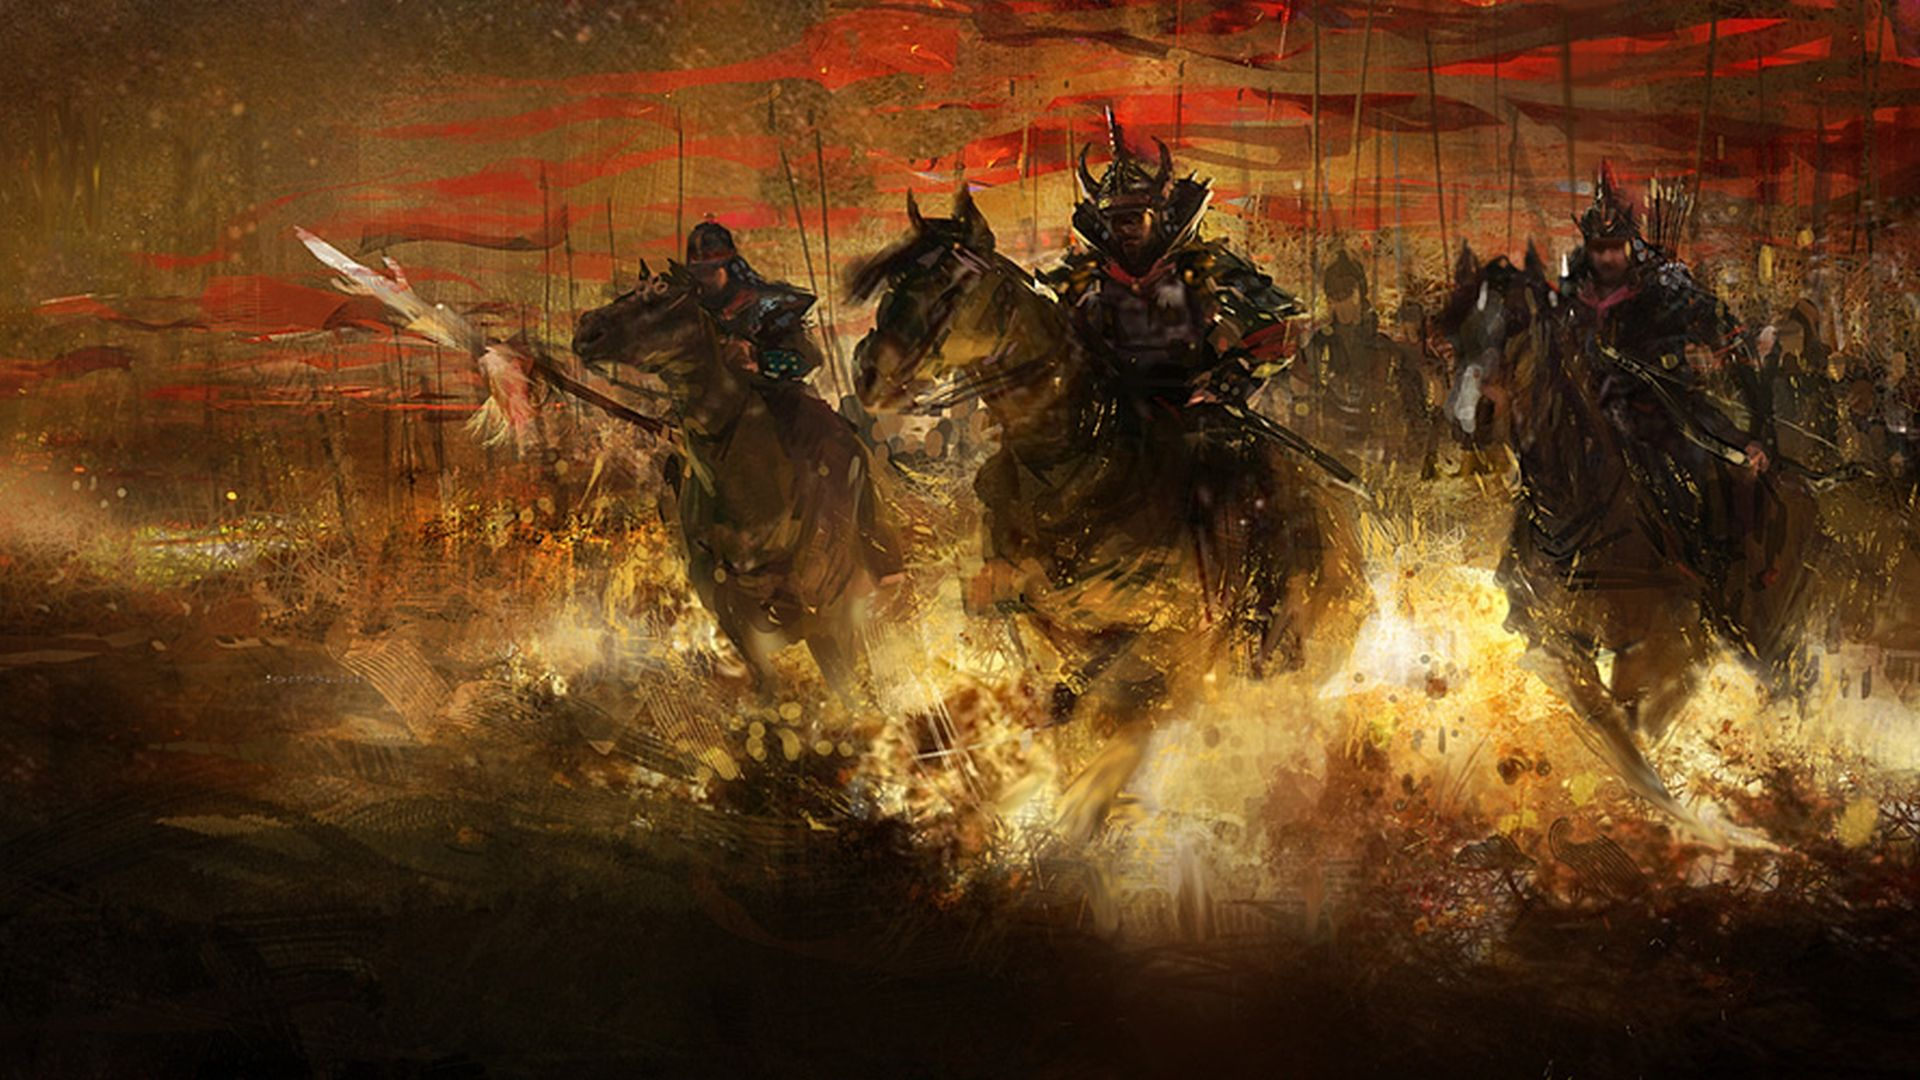 1920x1080 Samurai Battle | Samurai wallpaper, Warriors wallpaper, Fantasy samurai